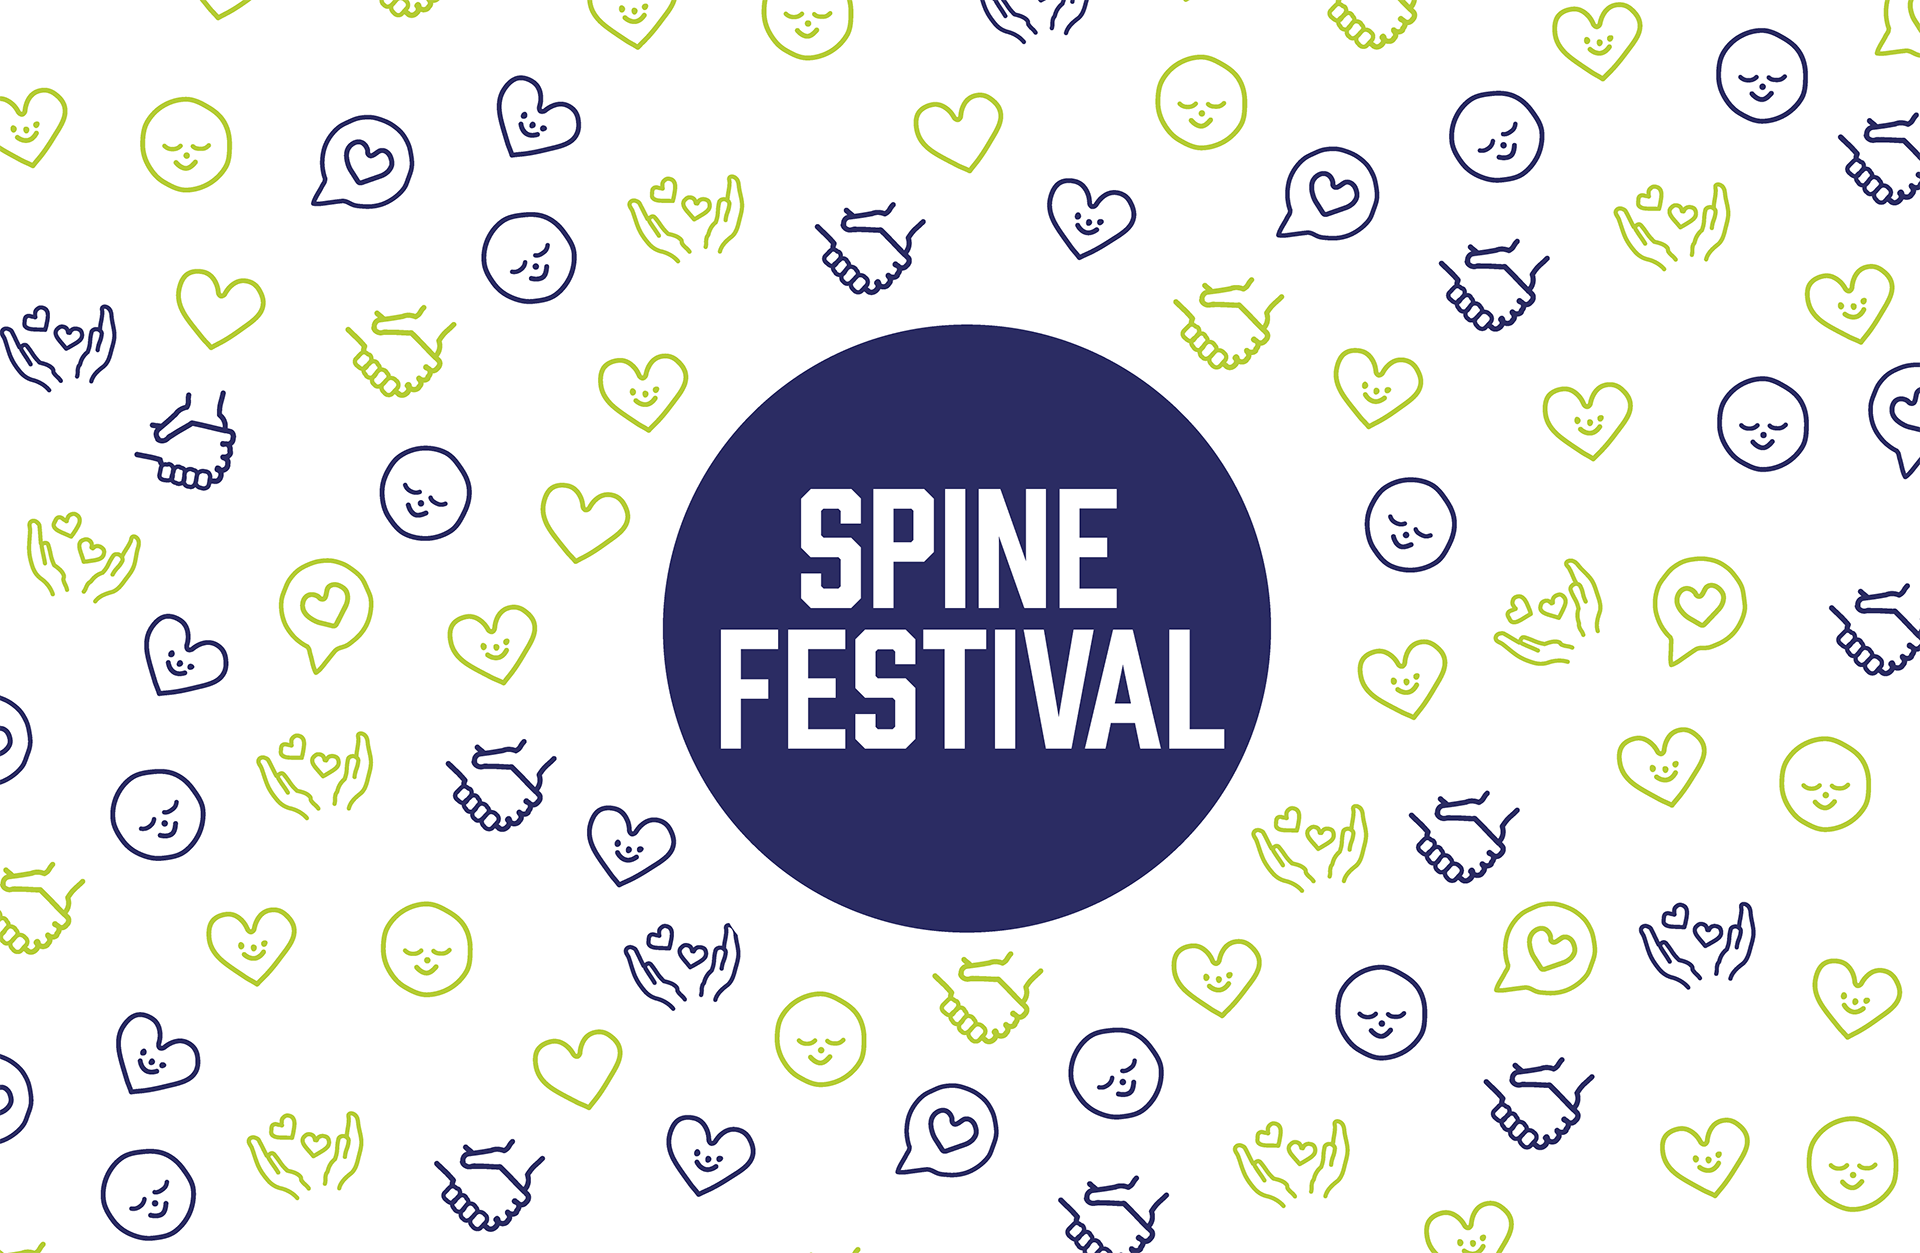 SPINE Festival 2021